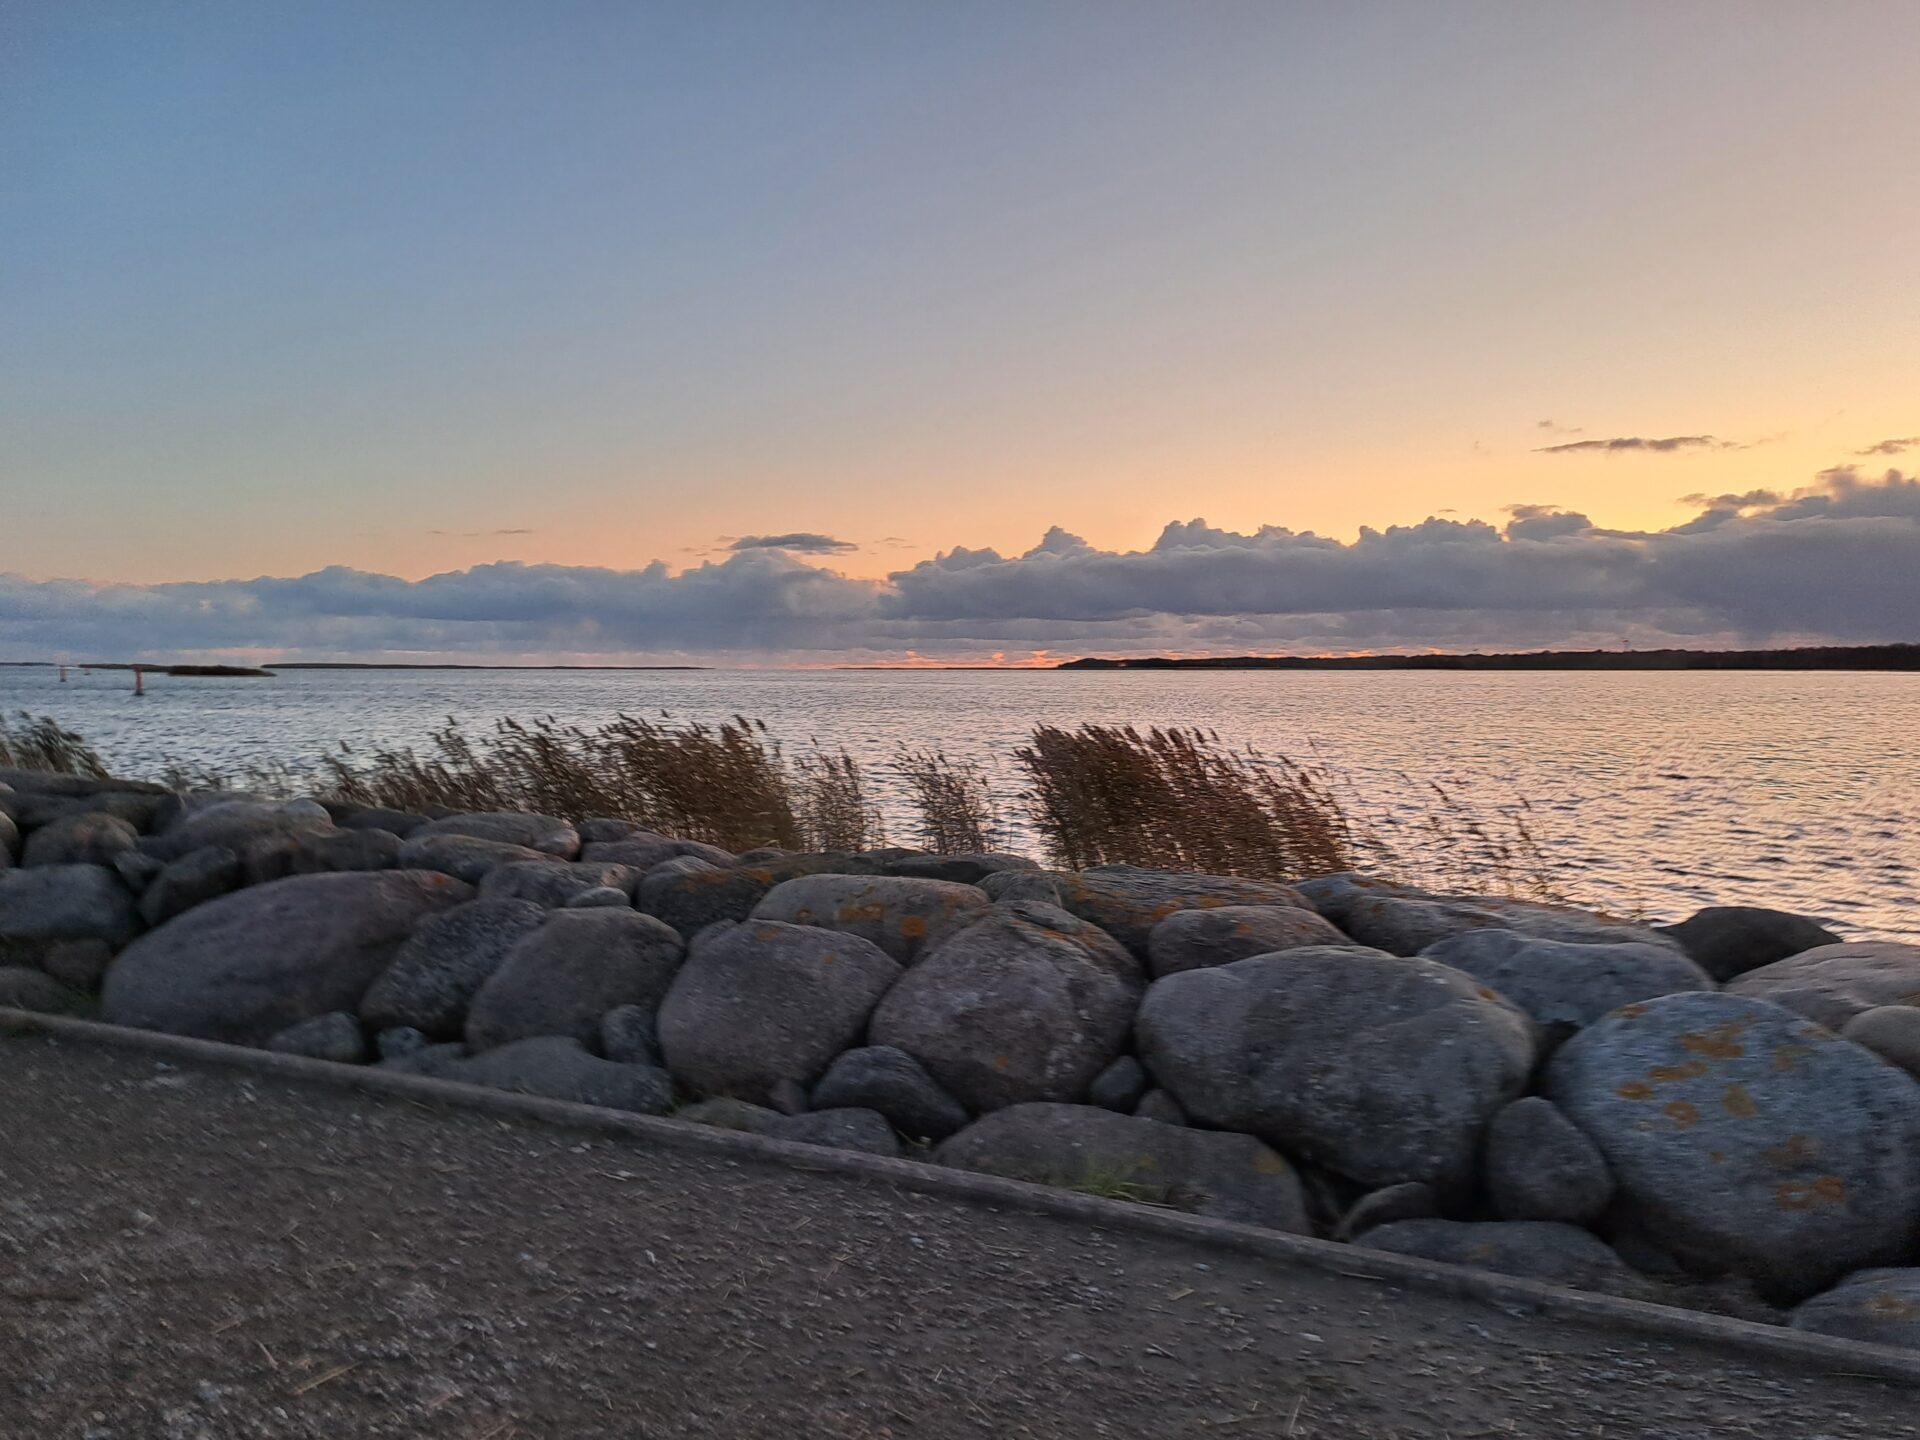 Auringonlaskun sävyinen maisemakuva, jossa kävelytietä reunustaa meren puolella kiviaita.